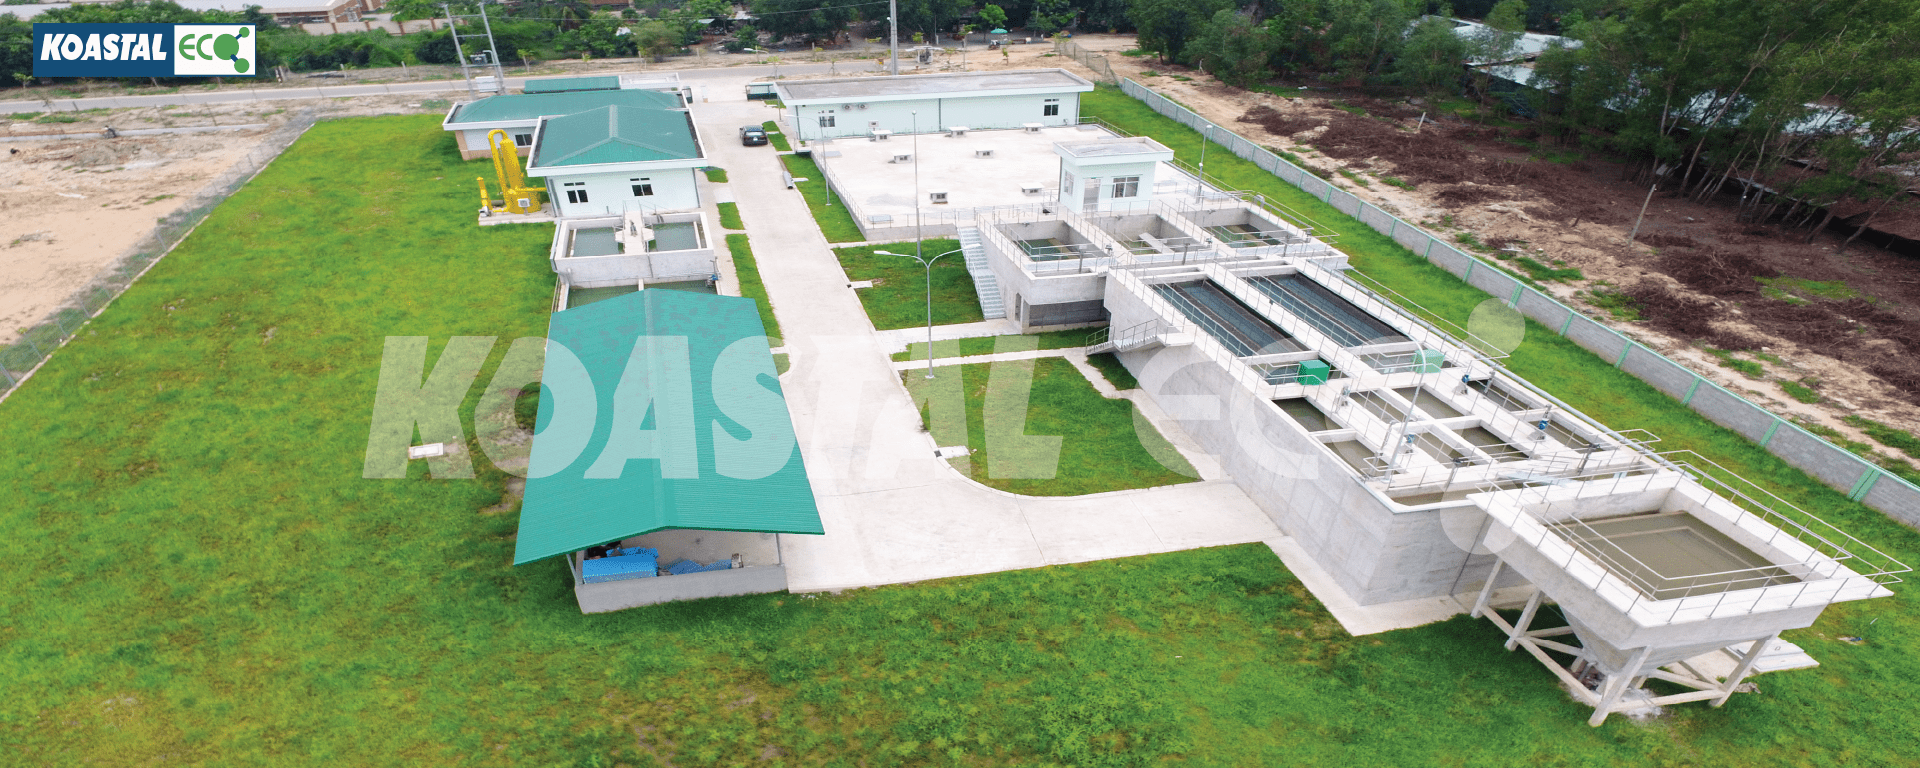 Hệ thống xử lý nước sạch Khu công nghiệp Đông Nam, Giai đoạn 1